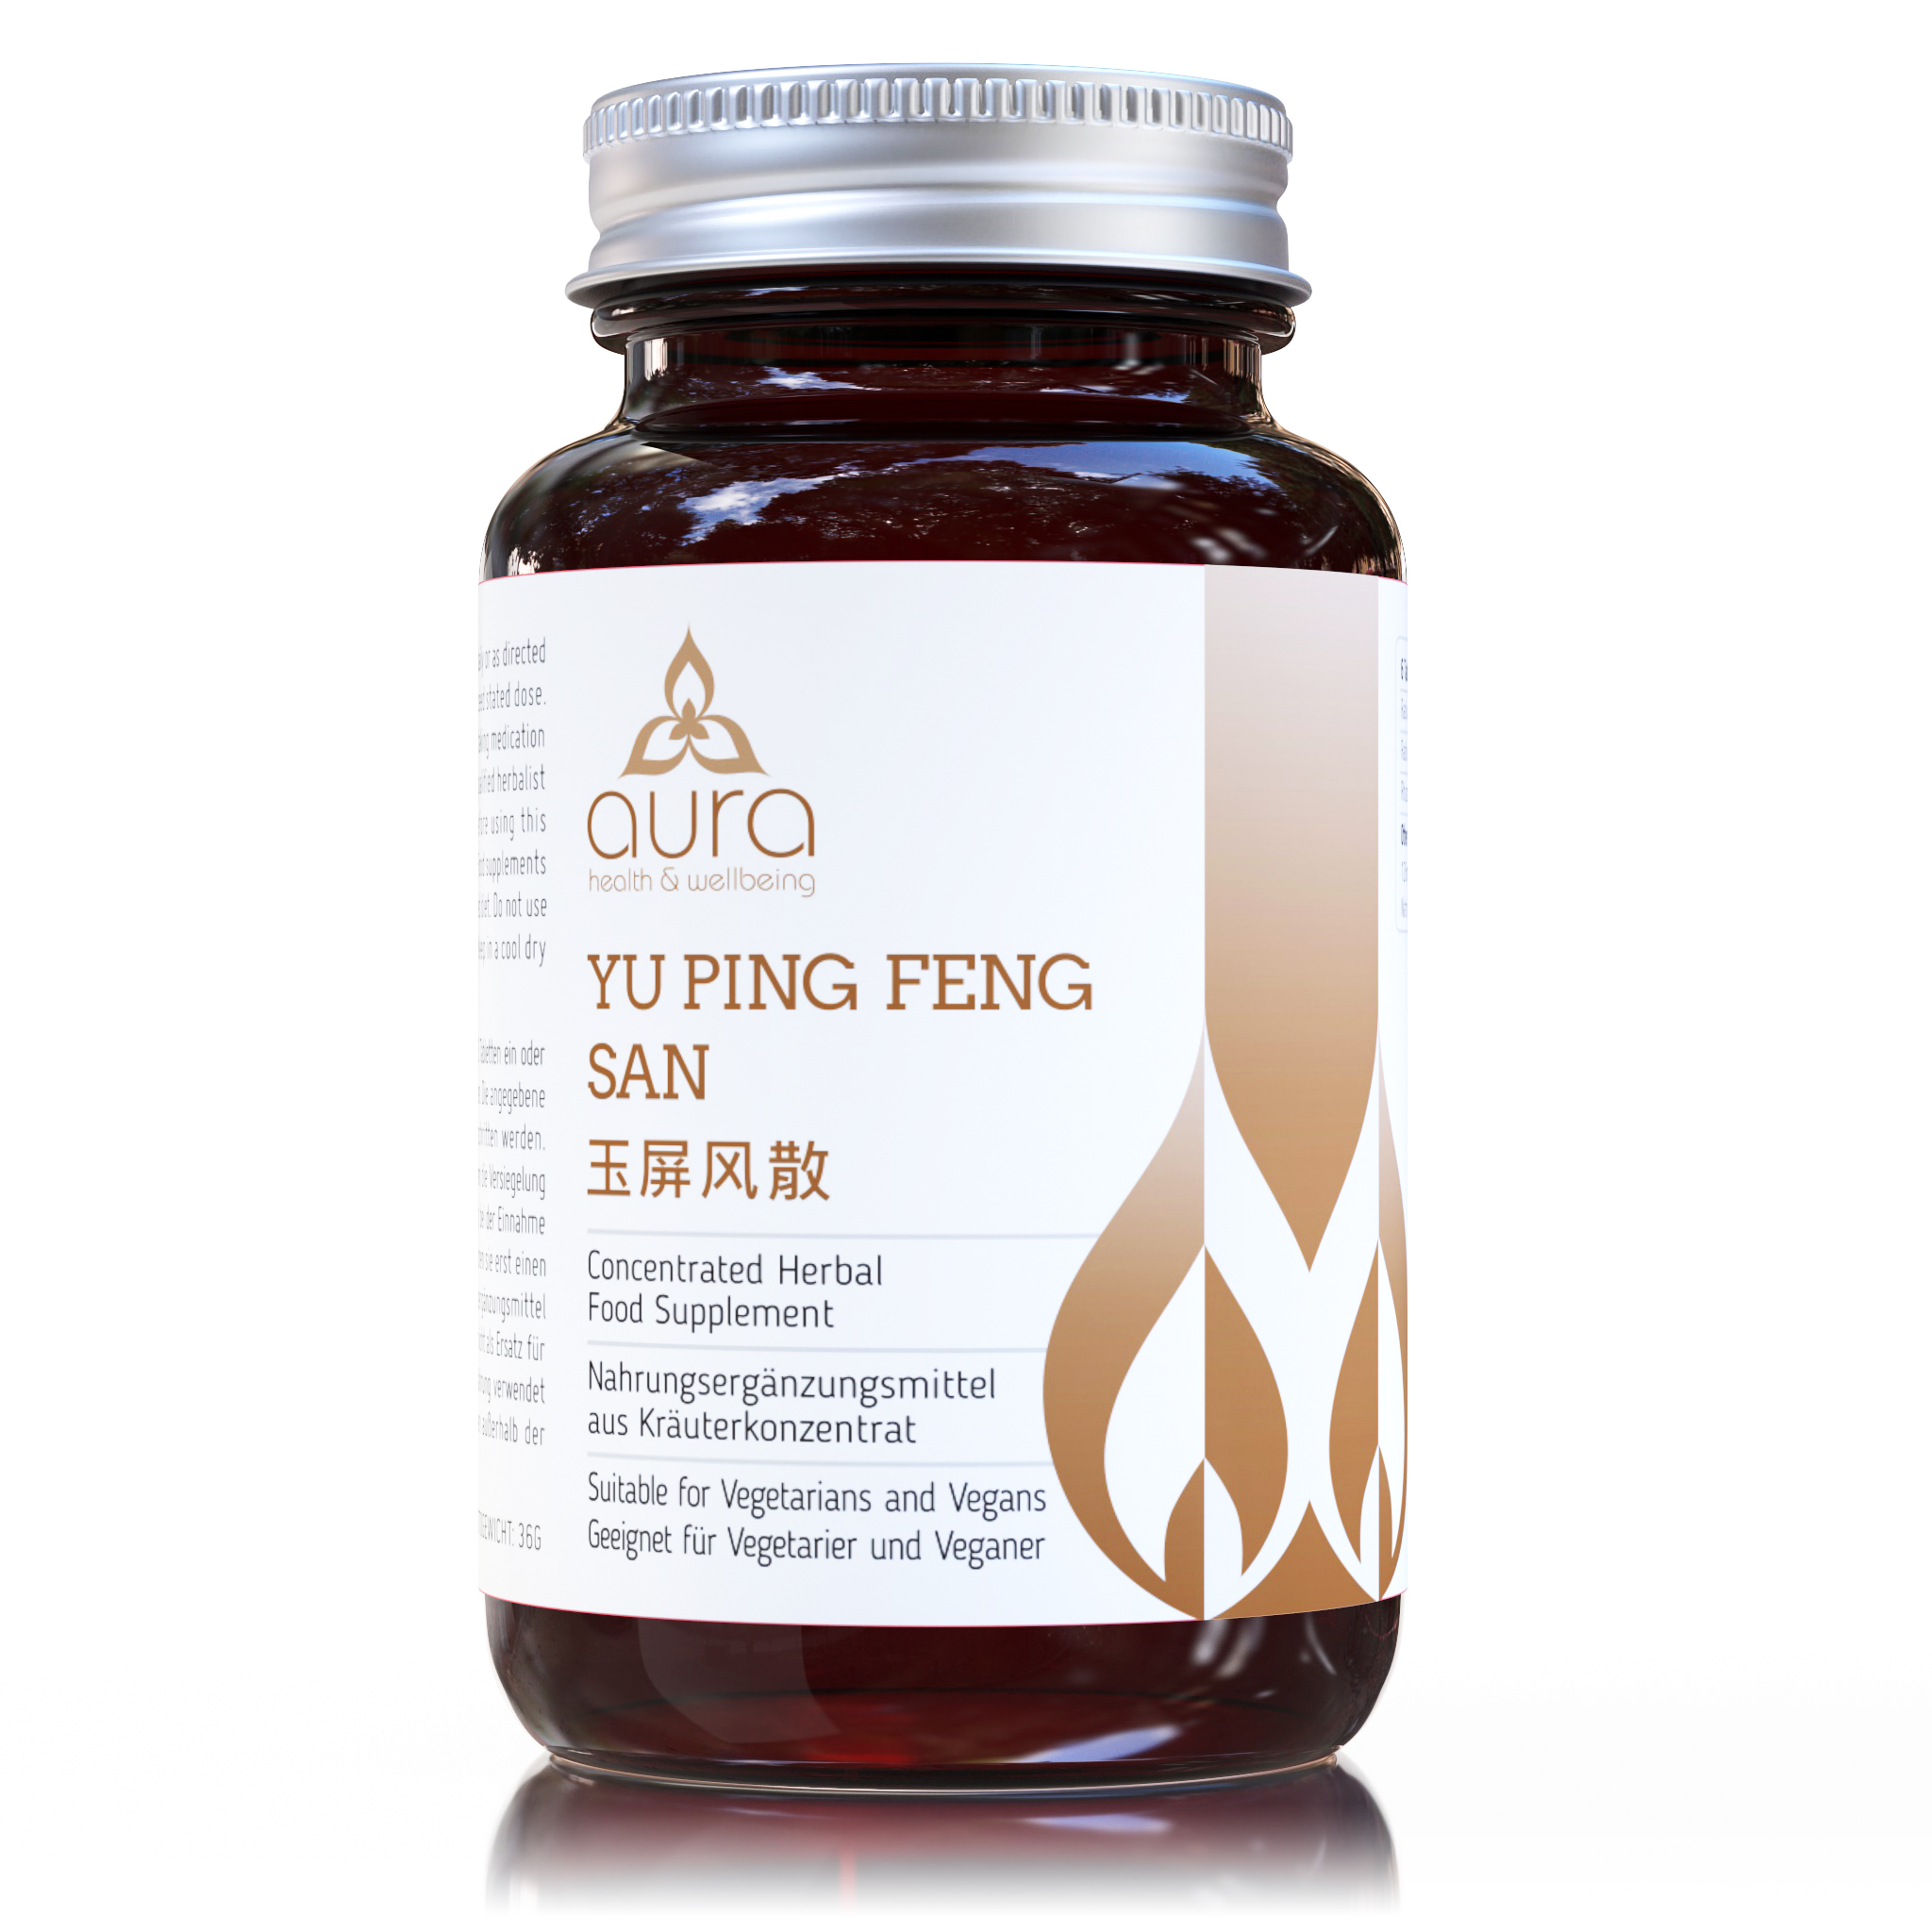 YU PING FENG SAN (tablets)